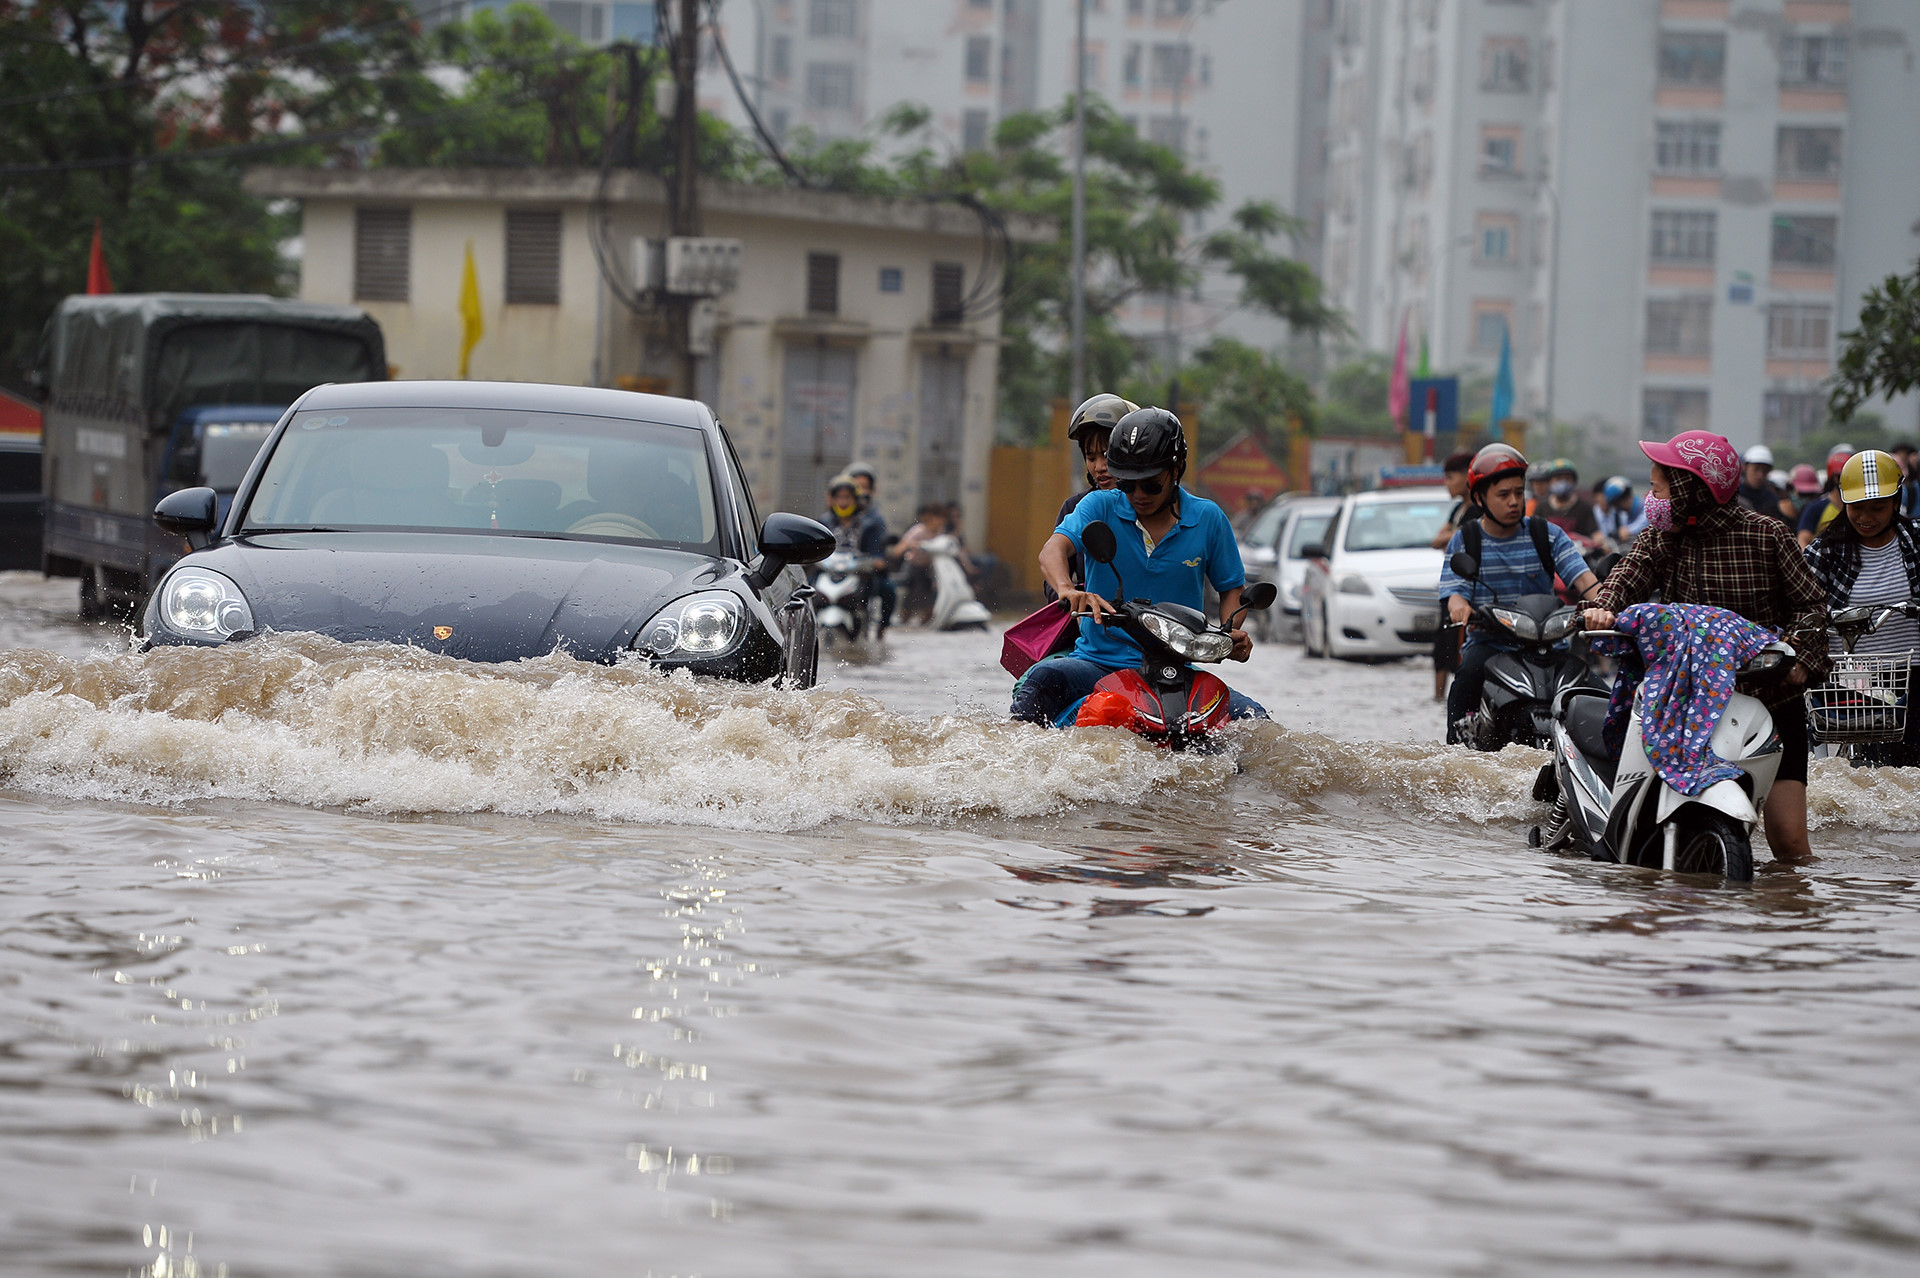 Kinh nghiệm lái xe, kinh nghiệm lái xe khi mưa bão, xe chết máy phải làm thế nào, xe ngập nước, lái xe qua vùng ngập nước, xử lý xe bị chết máy, 